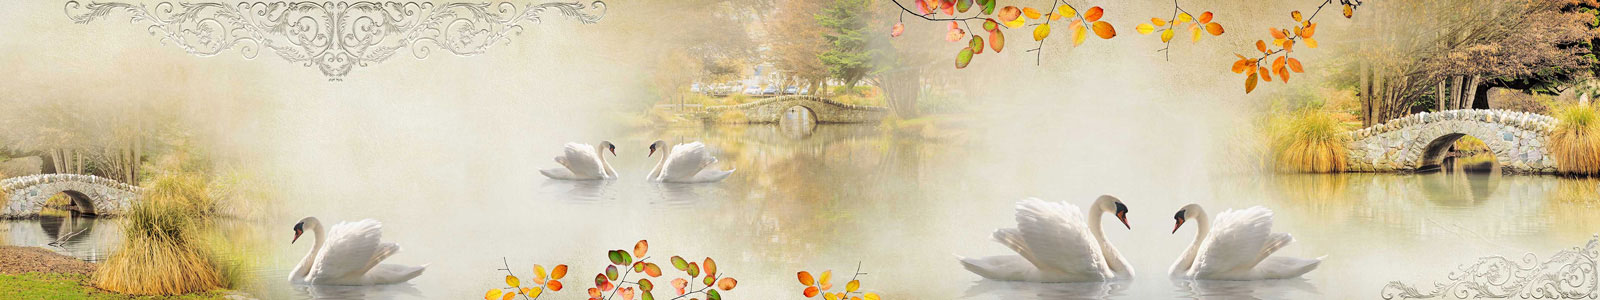 №4500 - Осенний фон с лебедями в саду с каменным мостом